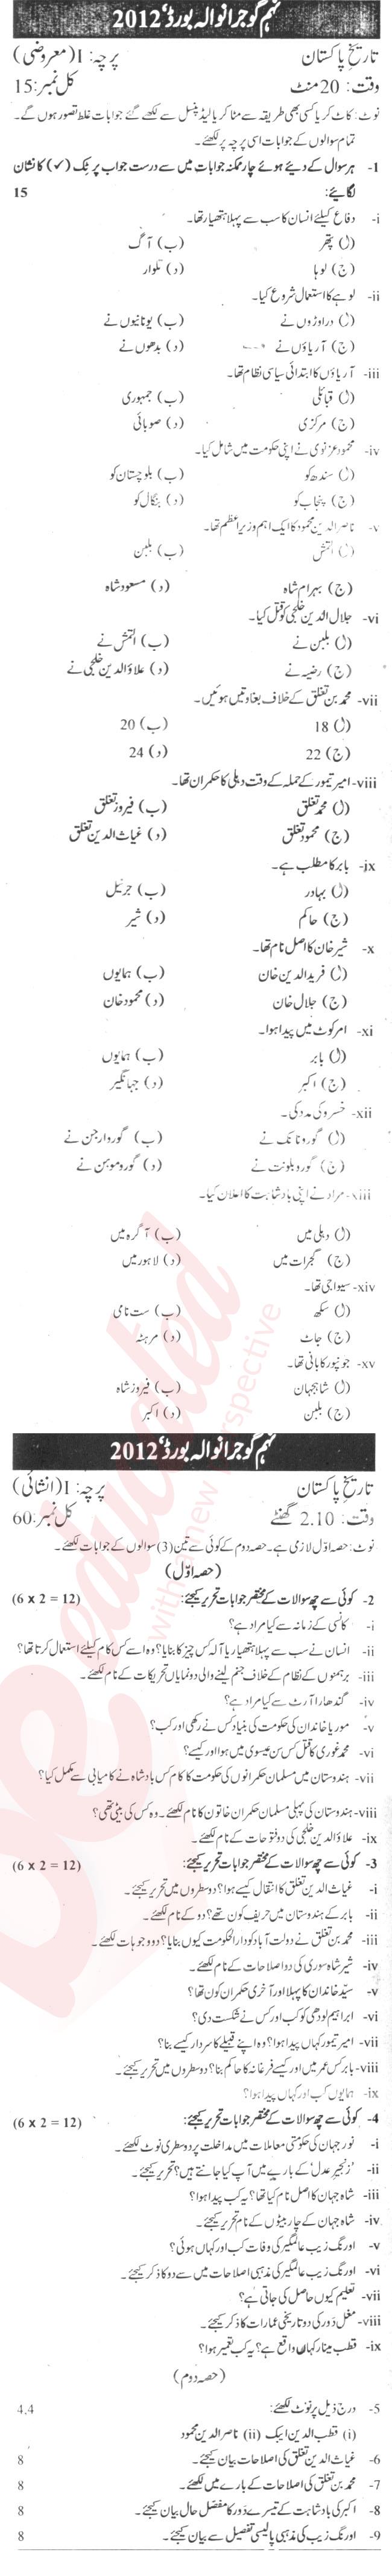 Pakistan History 9th Urdu Medium Past Paper Group 2 BISE Gujranwala 2012